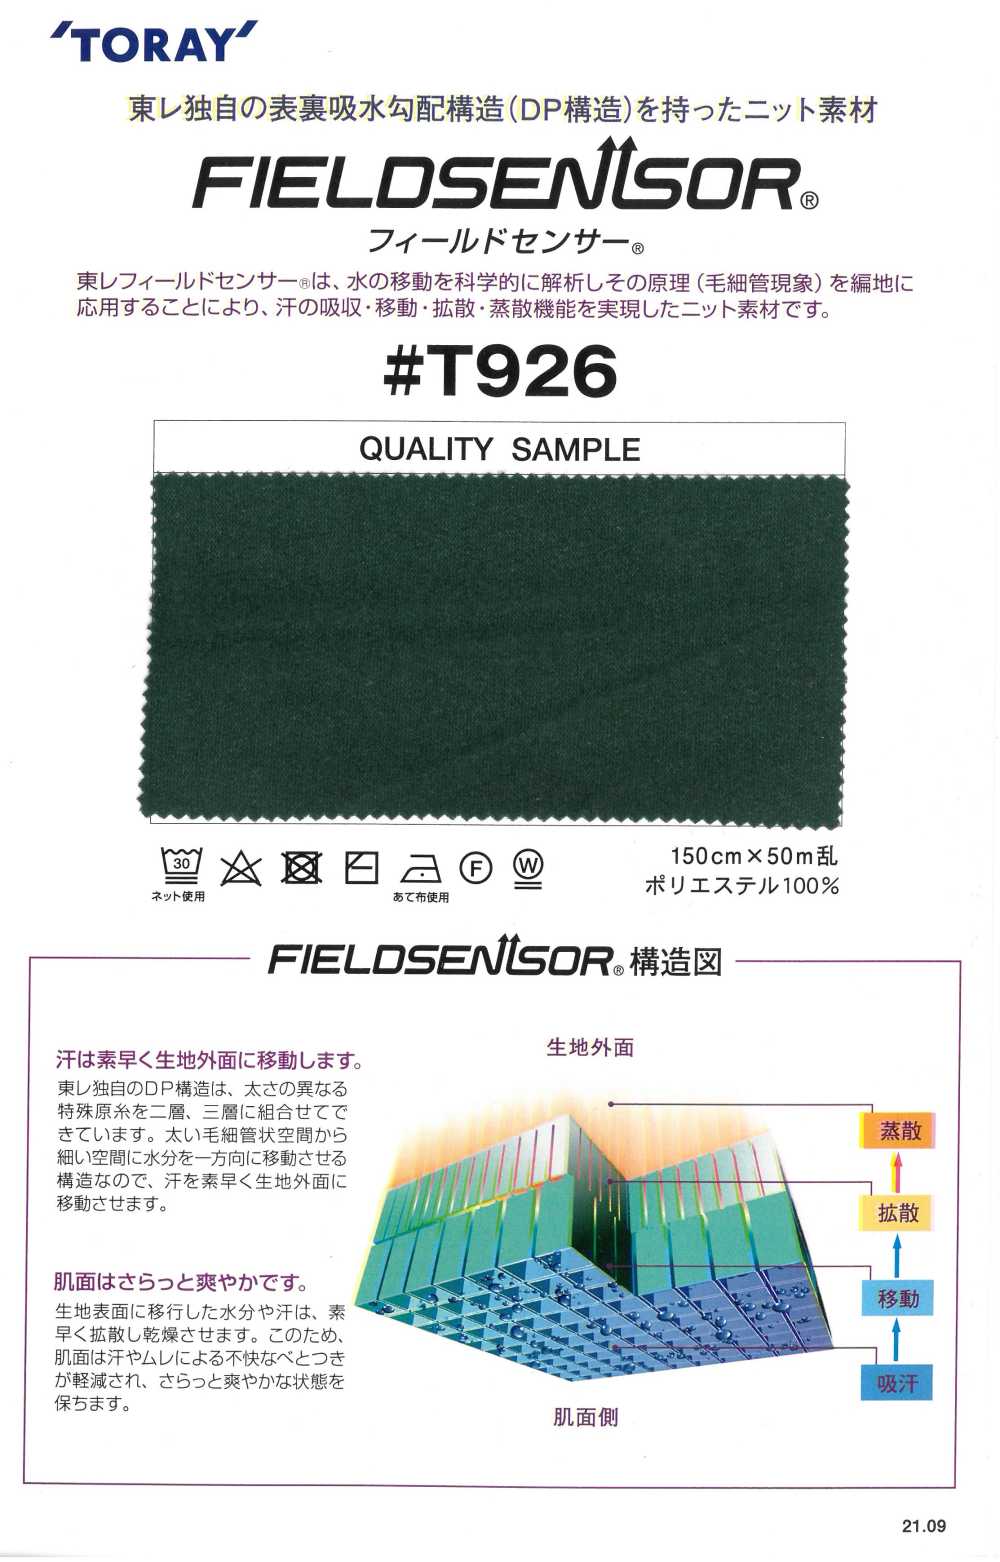 T926 Matériau En Tricot TORAY Field Sensor® Pour Vêtements Intérieurs (Type Flou)[Fabrication De Textile] Tamurakoma